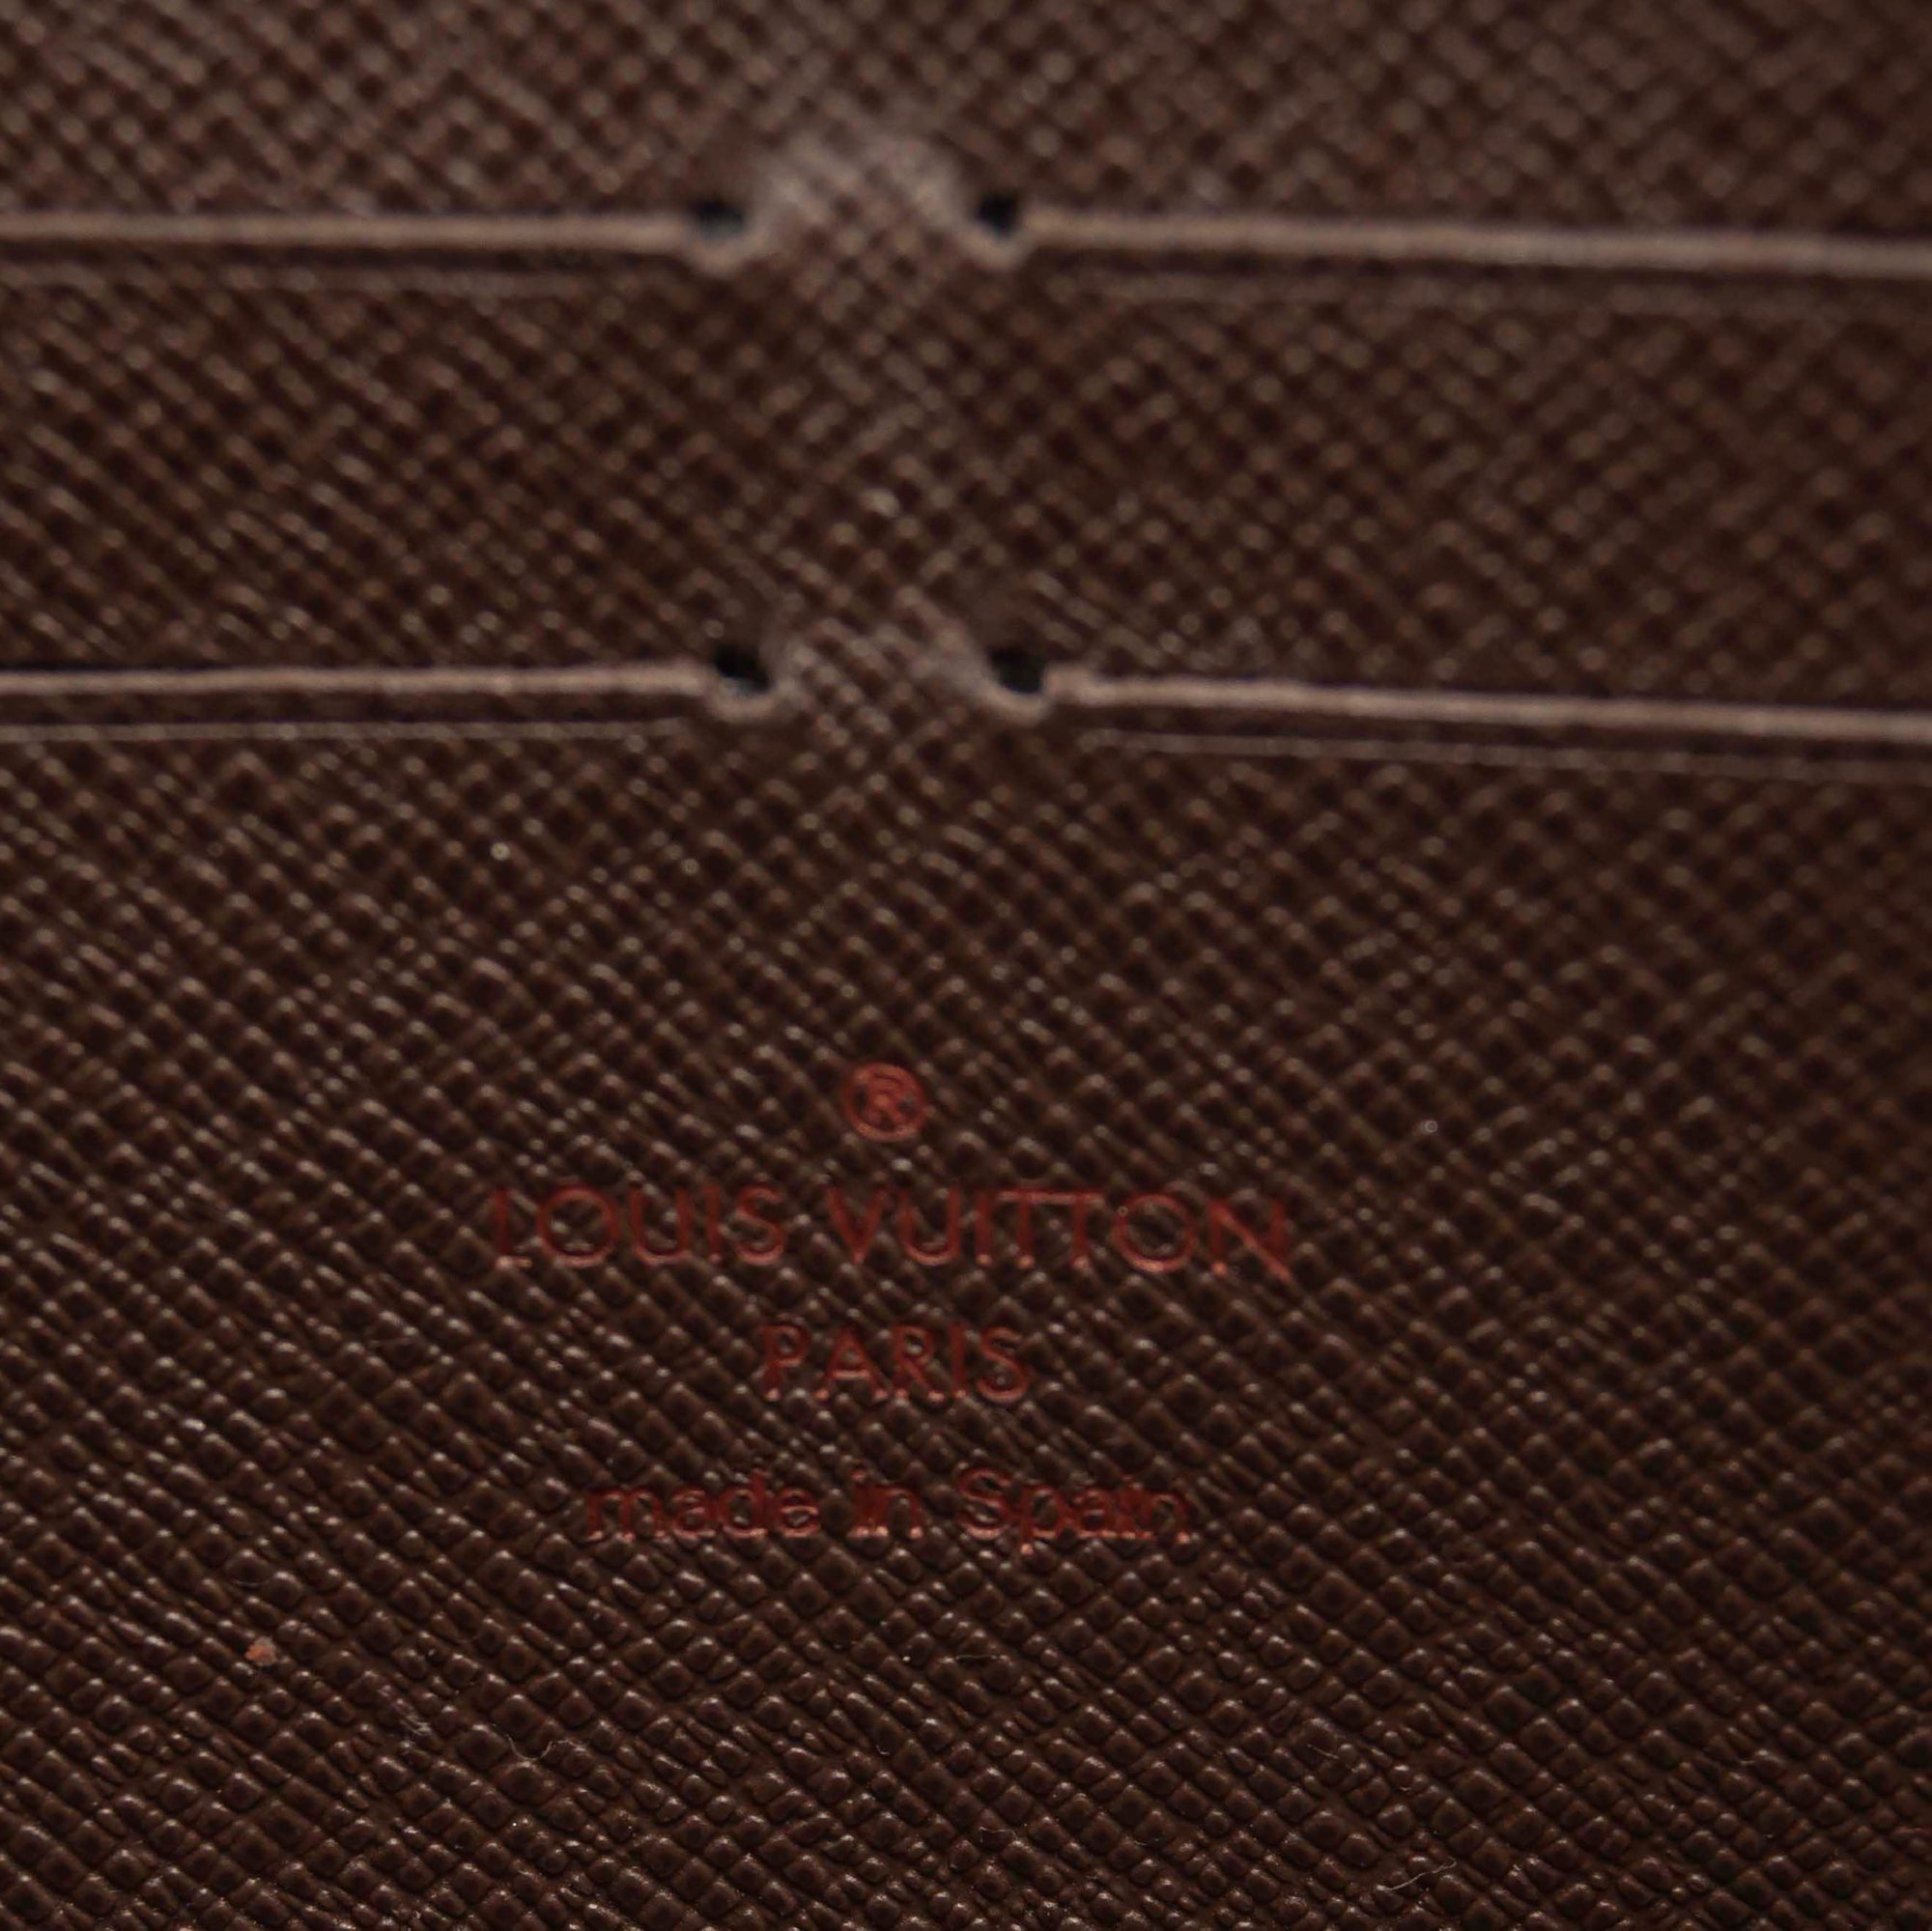 Authentic Louis Vuitton damier ebene zippy wallet